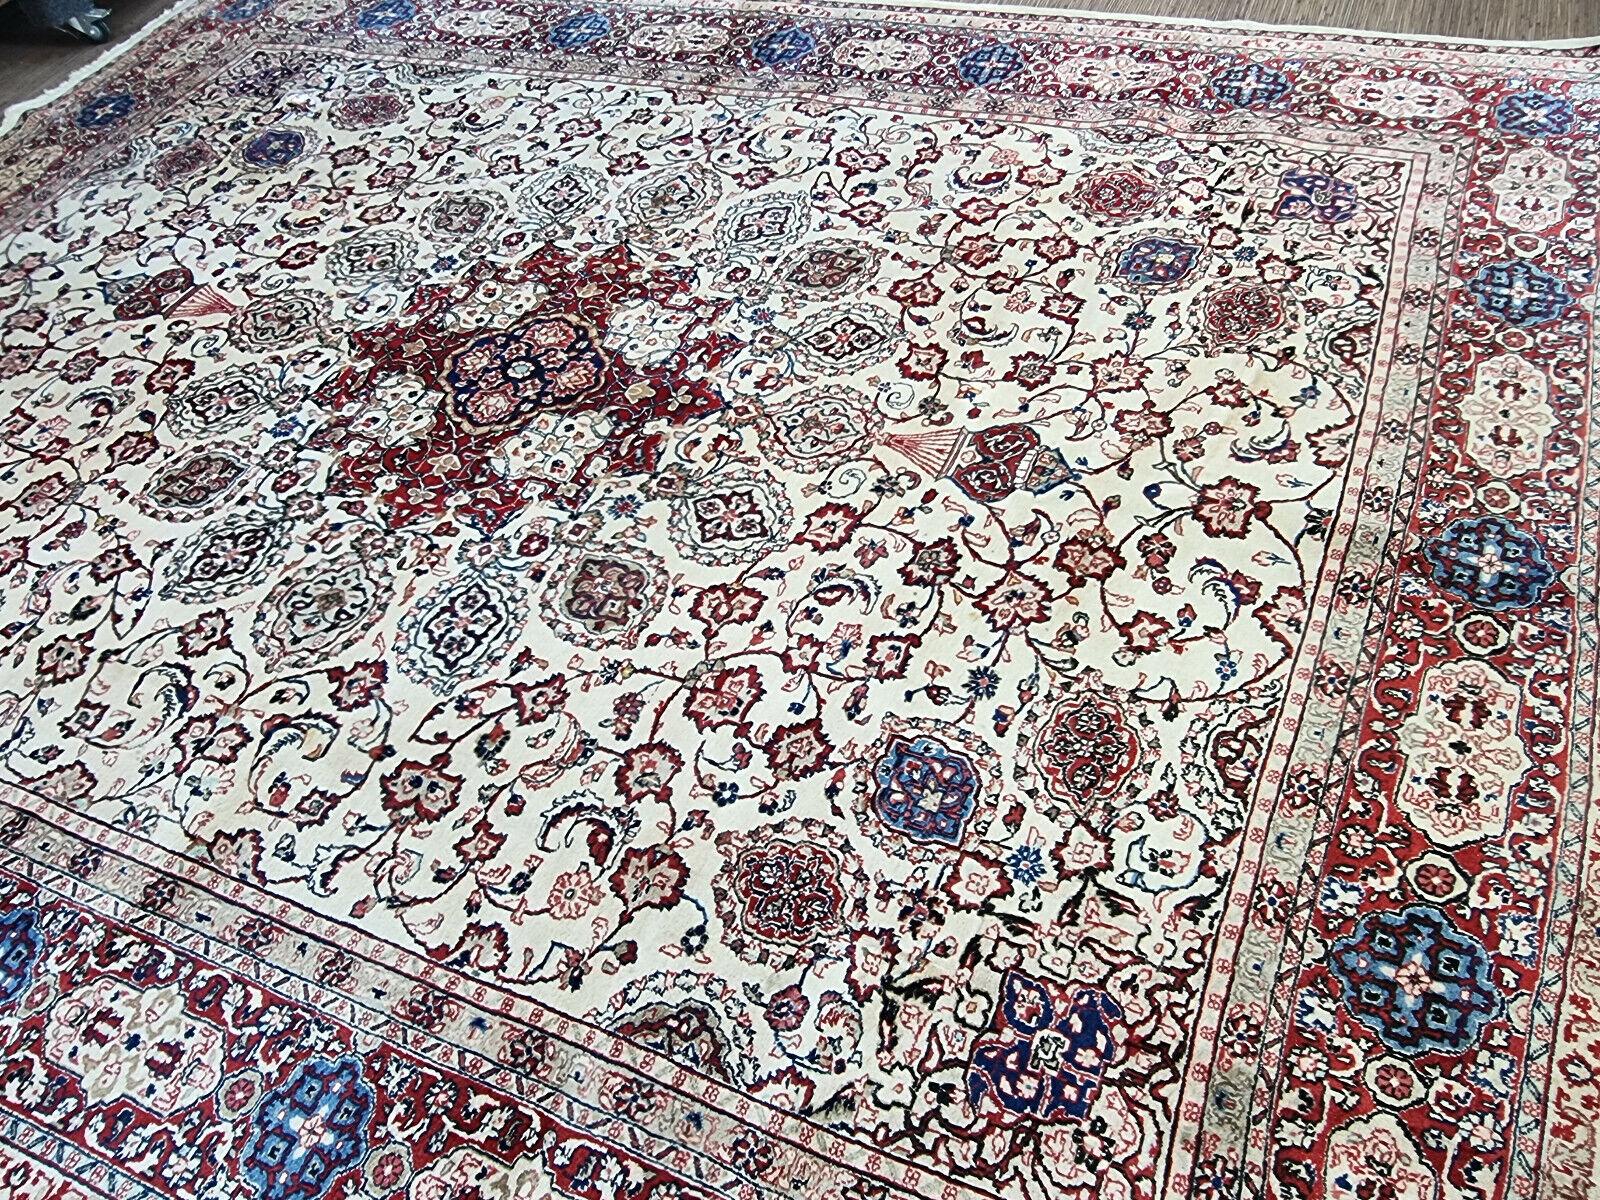 Handgefertigter Sarouk-Teppich im persischen Vintage-Stil

Verleihen Sie Ihrem Zuhause mit diesem handgefertigten Sarouk-Teppich im persischen Vintage-Stil einen Hauch von zeitloser Eleganz. Dieses exquisite Stück ist ein Zeugnis der komplizierten